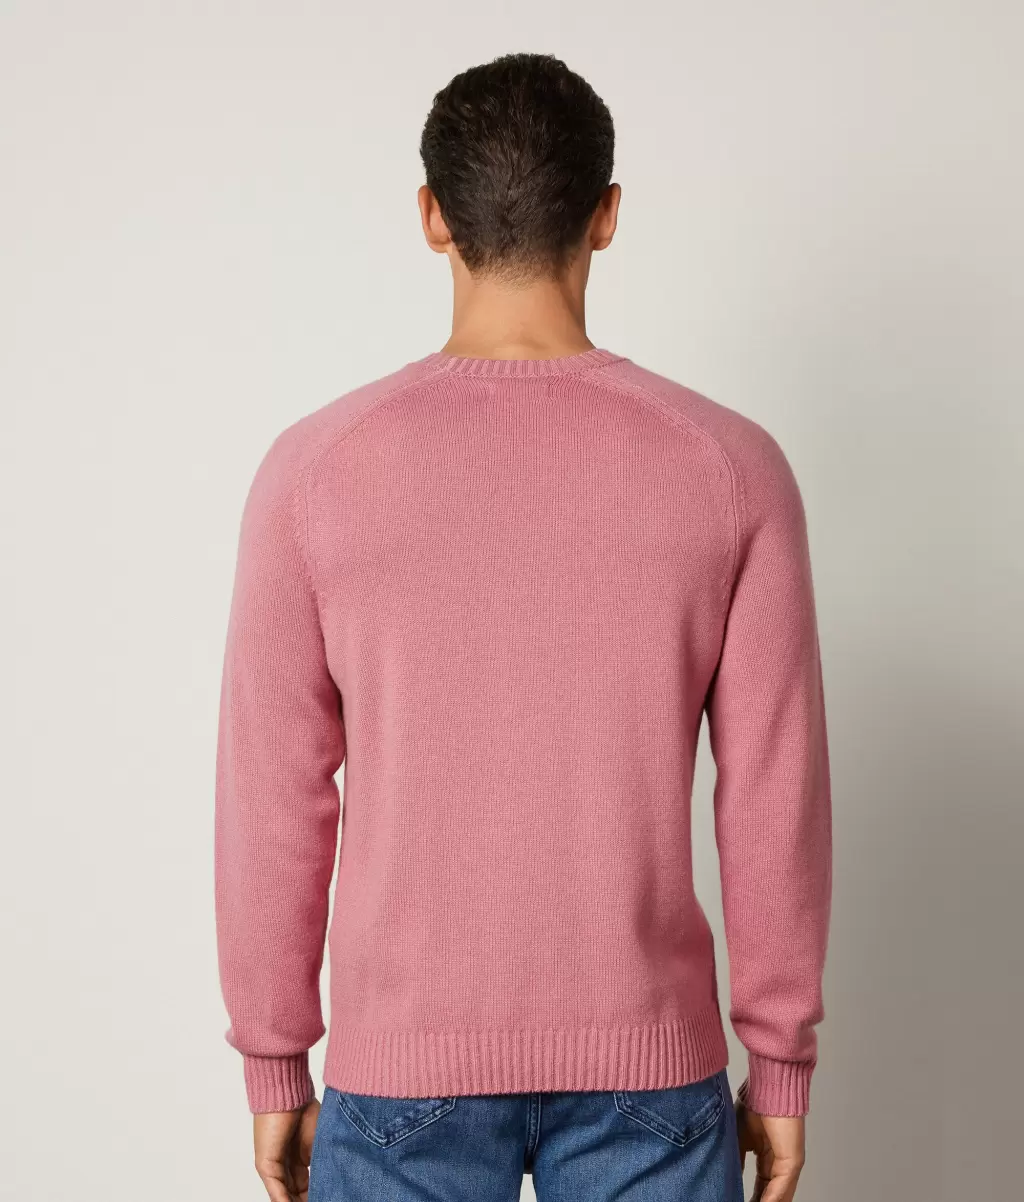 Swetry Z Okrągłym Dekoltem Pale_Pink Pulower Z Kaszmiru Ultrasoft Falconeri Mężczyzna - 2